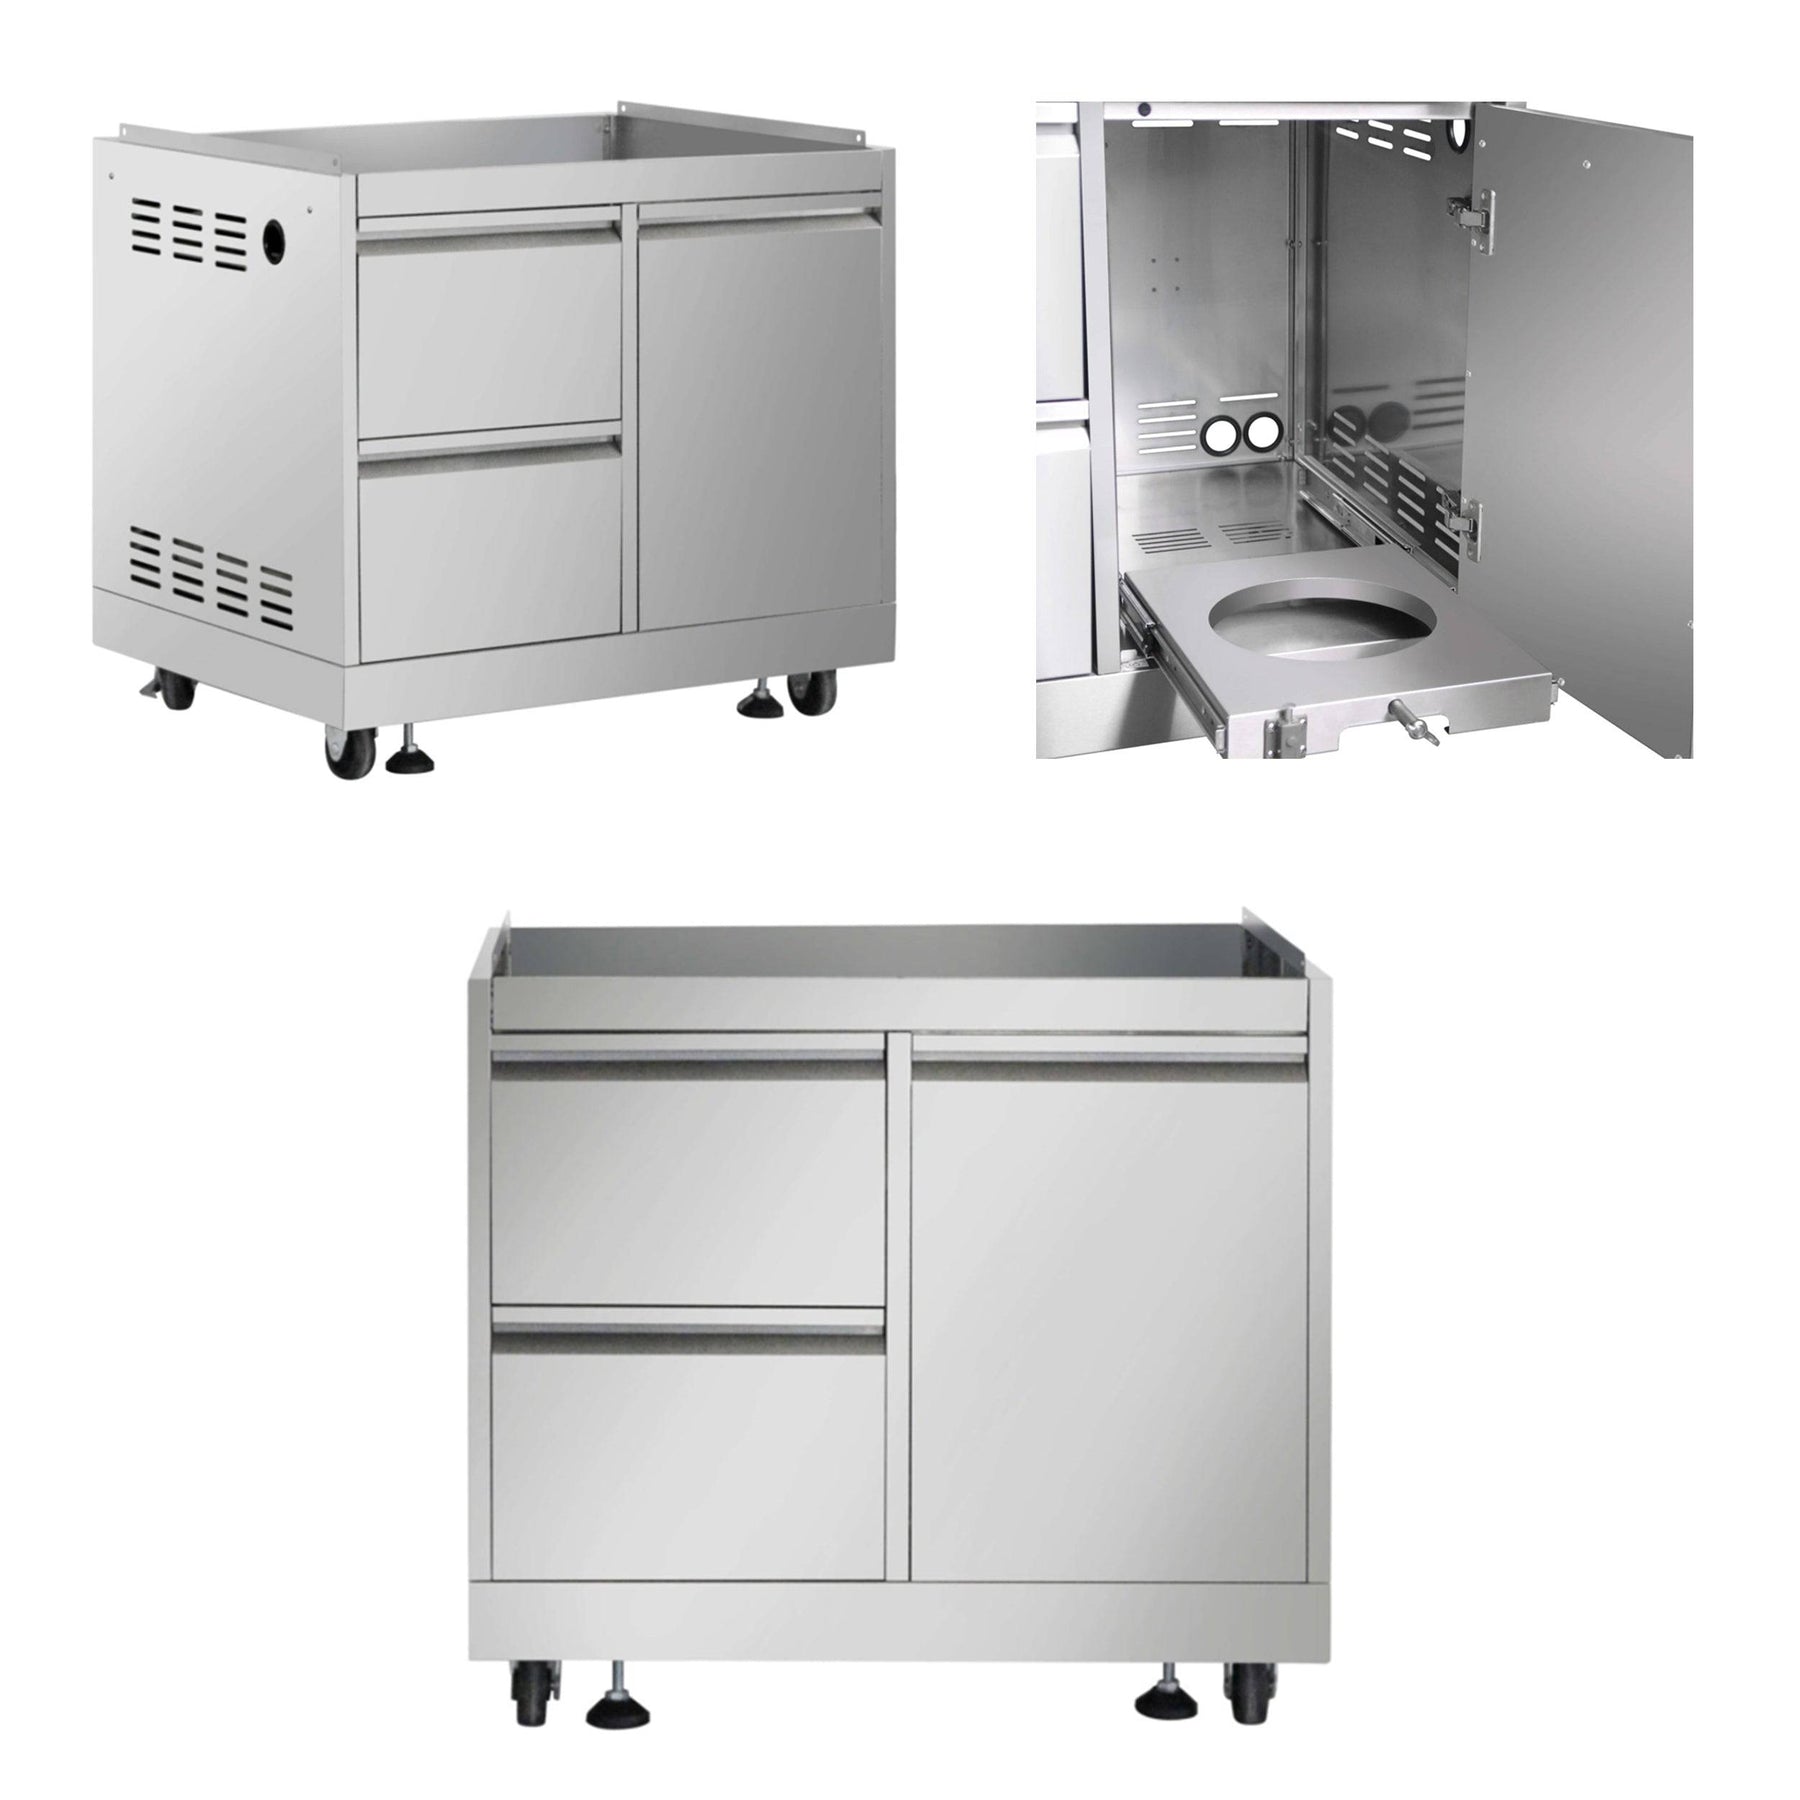 Fobest Kitchen 5 Piece Modular Stainless Steel Outdoor Kitchen Suite with Under Counter Refrigerator Drawer